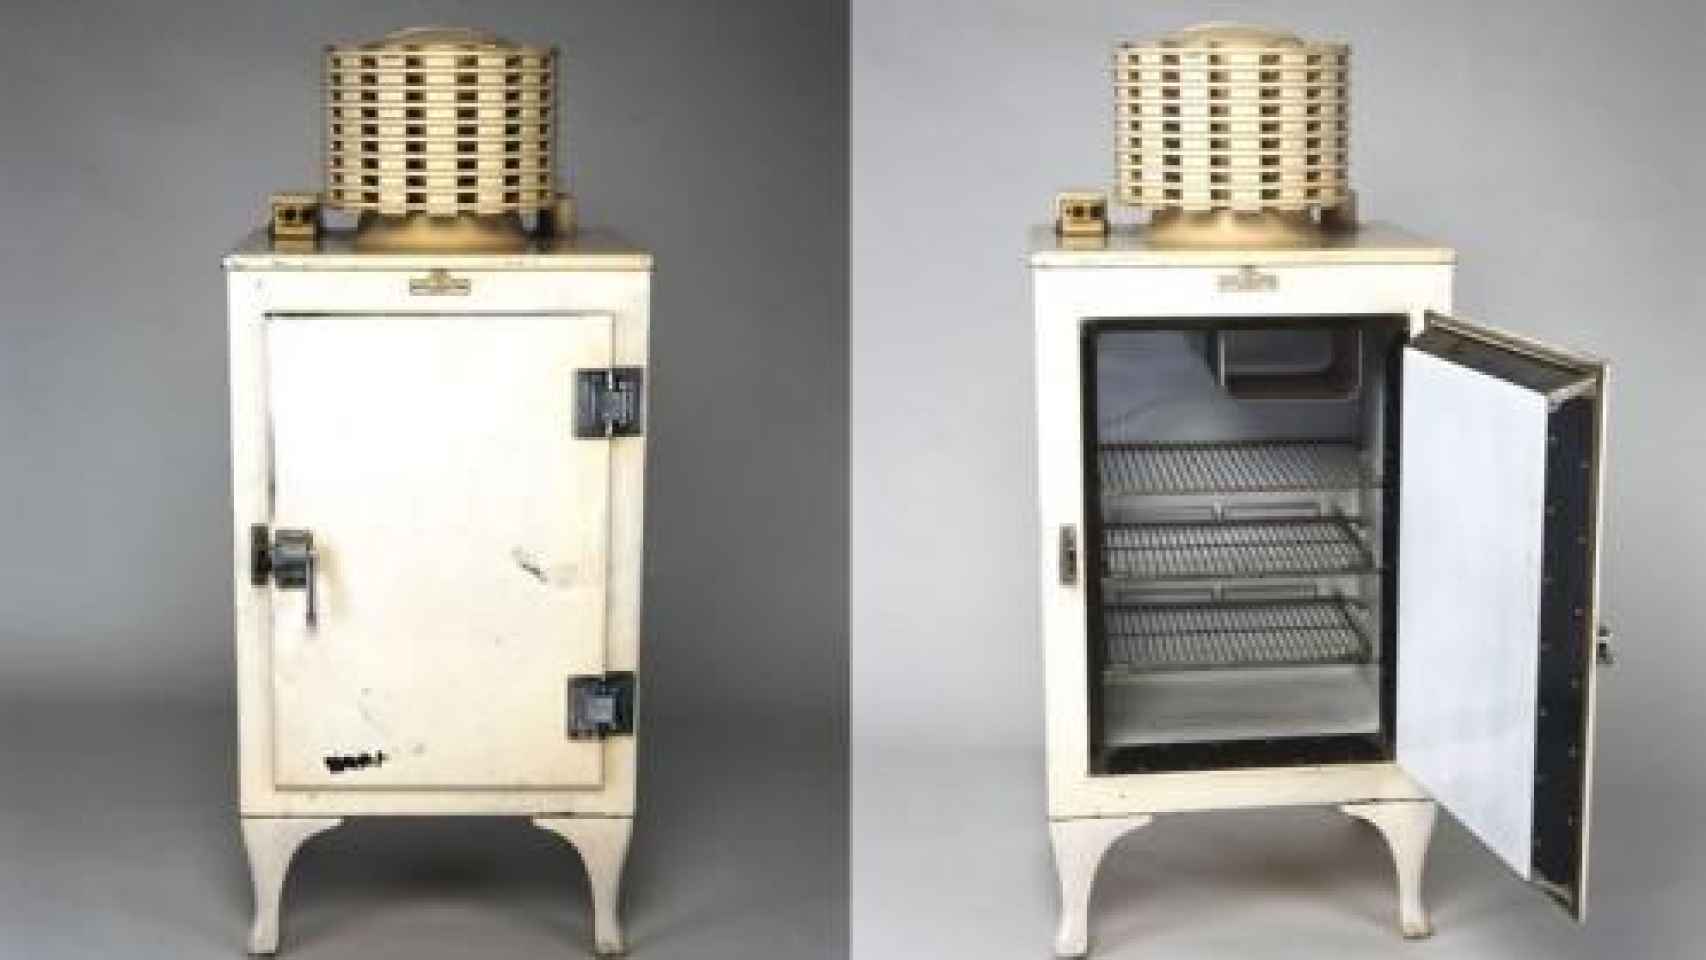 Jacob Perkins construyó el primer sistema de refrigeración por compresión de vapor del mundo.